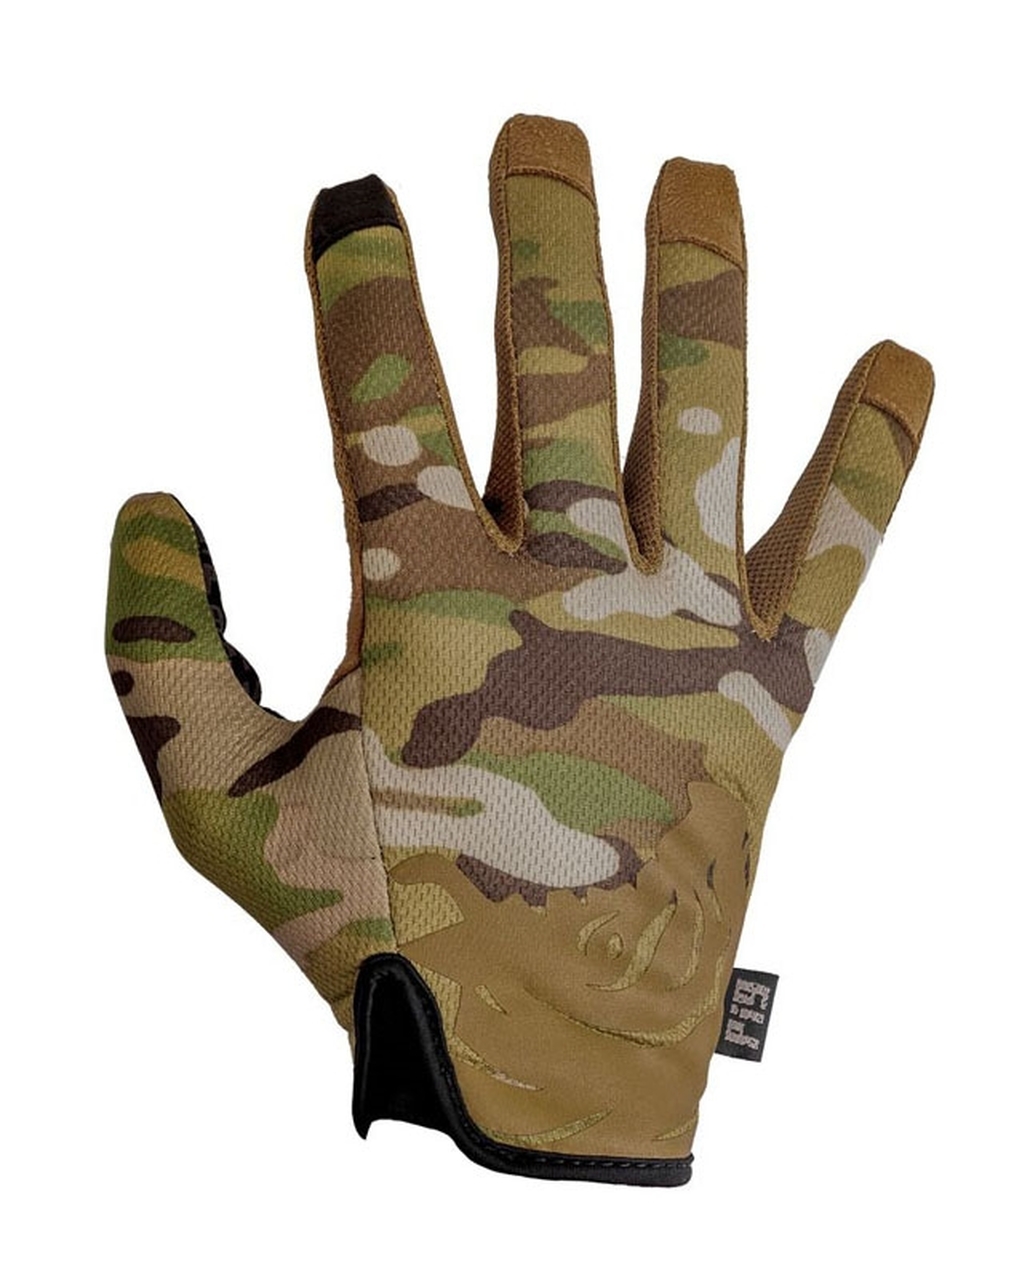 https://skdtac.com/pig-full-dexterity-tactical-fdt-delta-utility-glove/